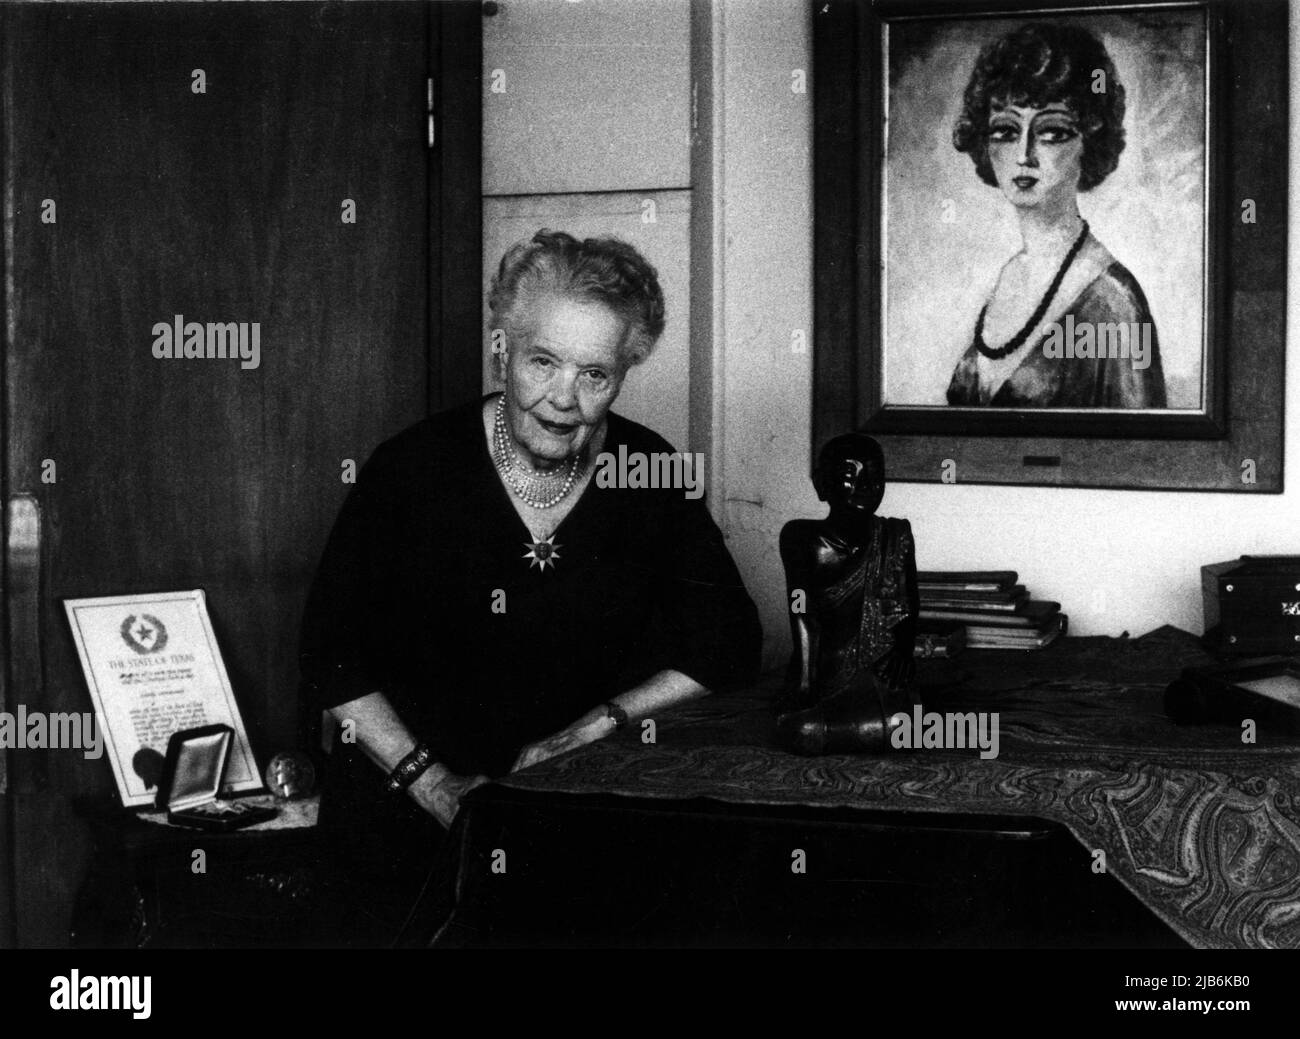 Portrait de la femme politique Louise Weiss (1893-1983) a Paris en 1977.©Michele Brabo/Opale.photo Foto Stock